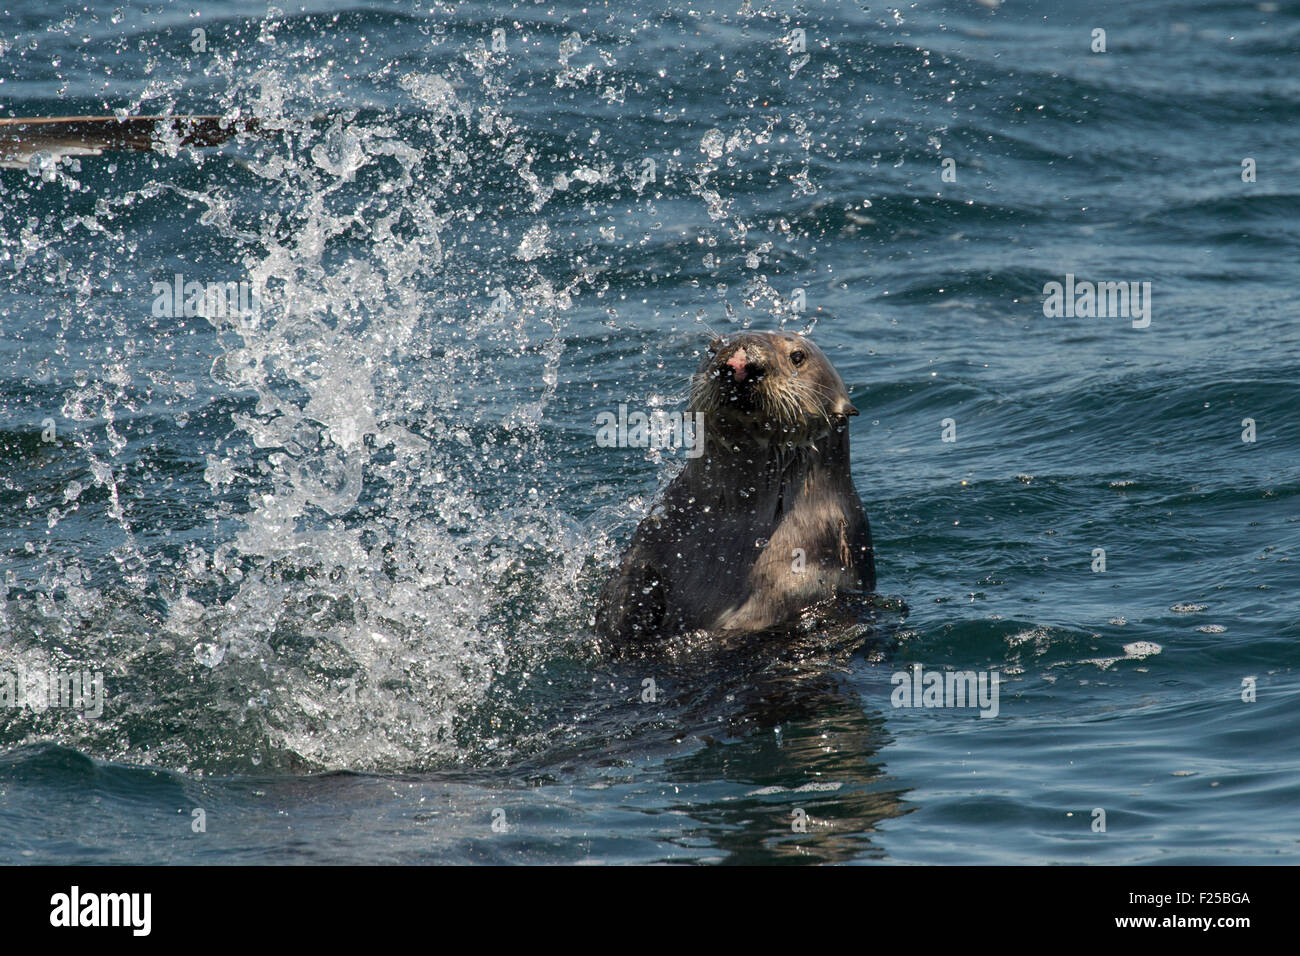 Southern sea otter, Enhydra lutris nereis, splashing, also known as California Sea Otter, Monterey, California, Pacific Ocean Stock Photo